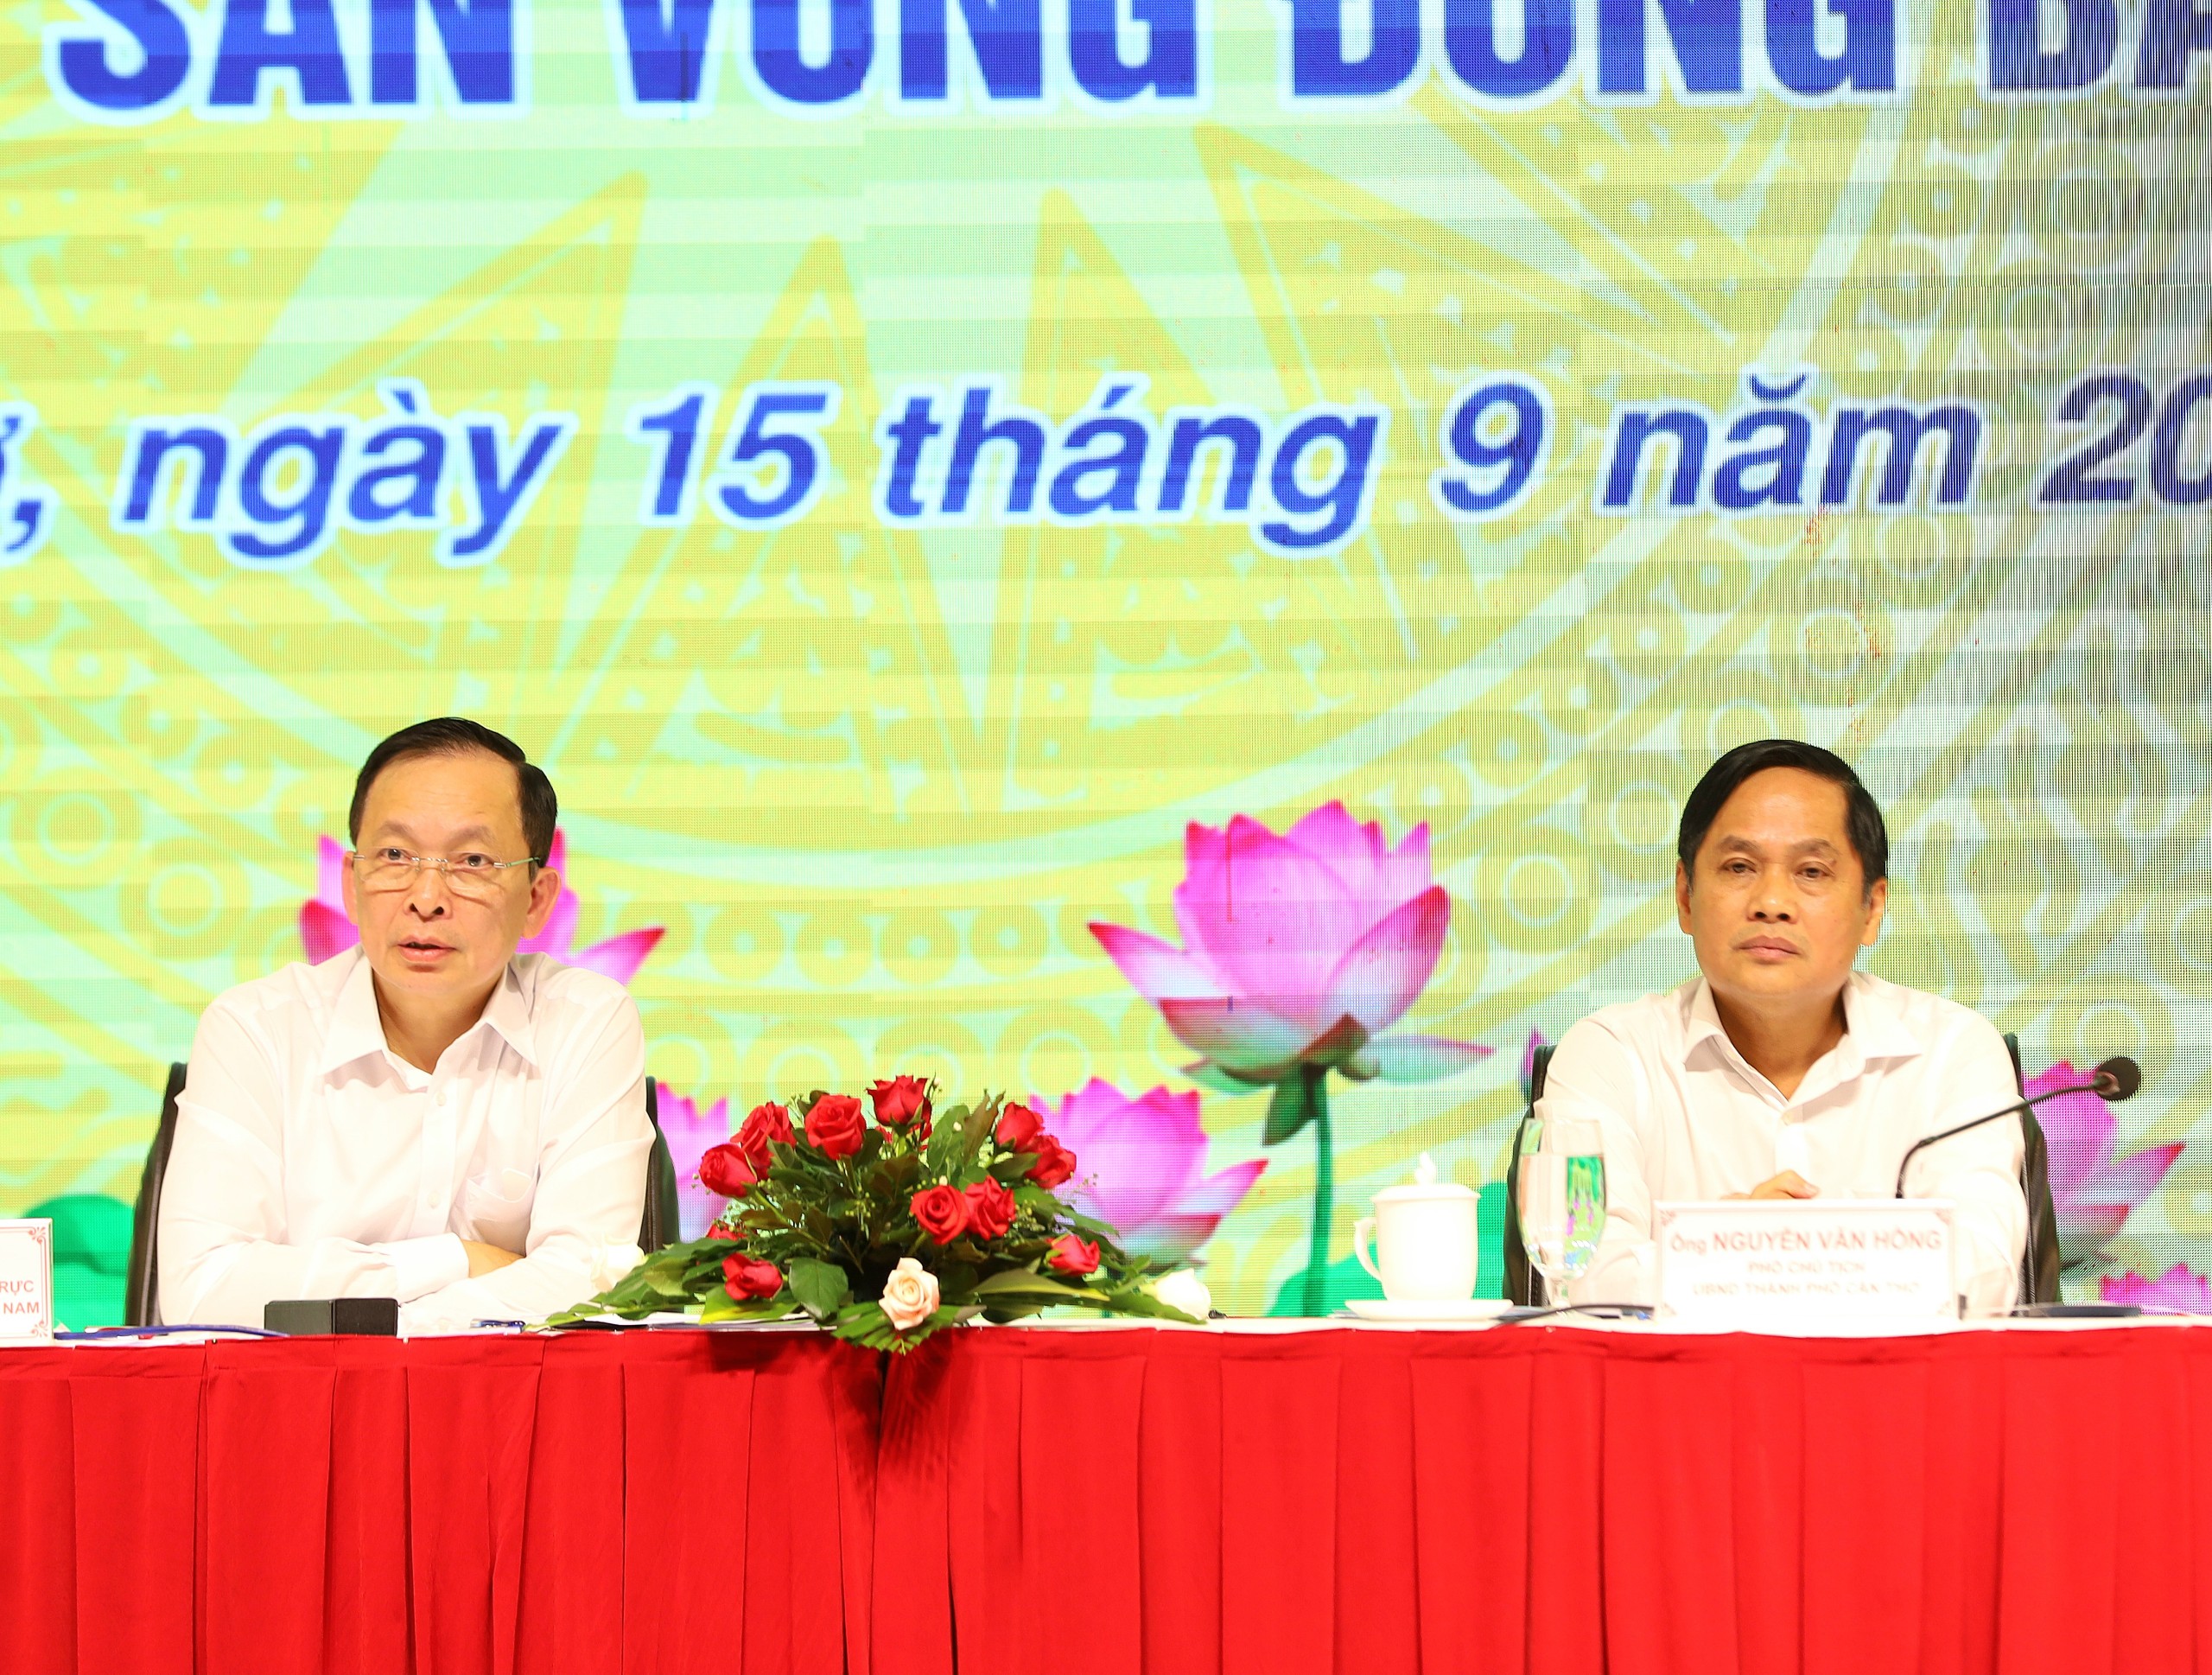 Ông Đào Minh Tú - Phó Thống đốc thường trực Ngân hàng Nhà nước Việt Nam và ông Nguyễn Văn Hồng - Phó Chủ tịch UBND TP. Cần Thơ đồng chủ trì hội nghị.